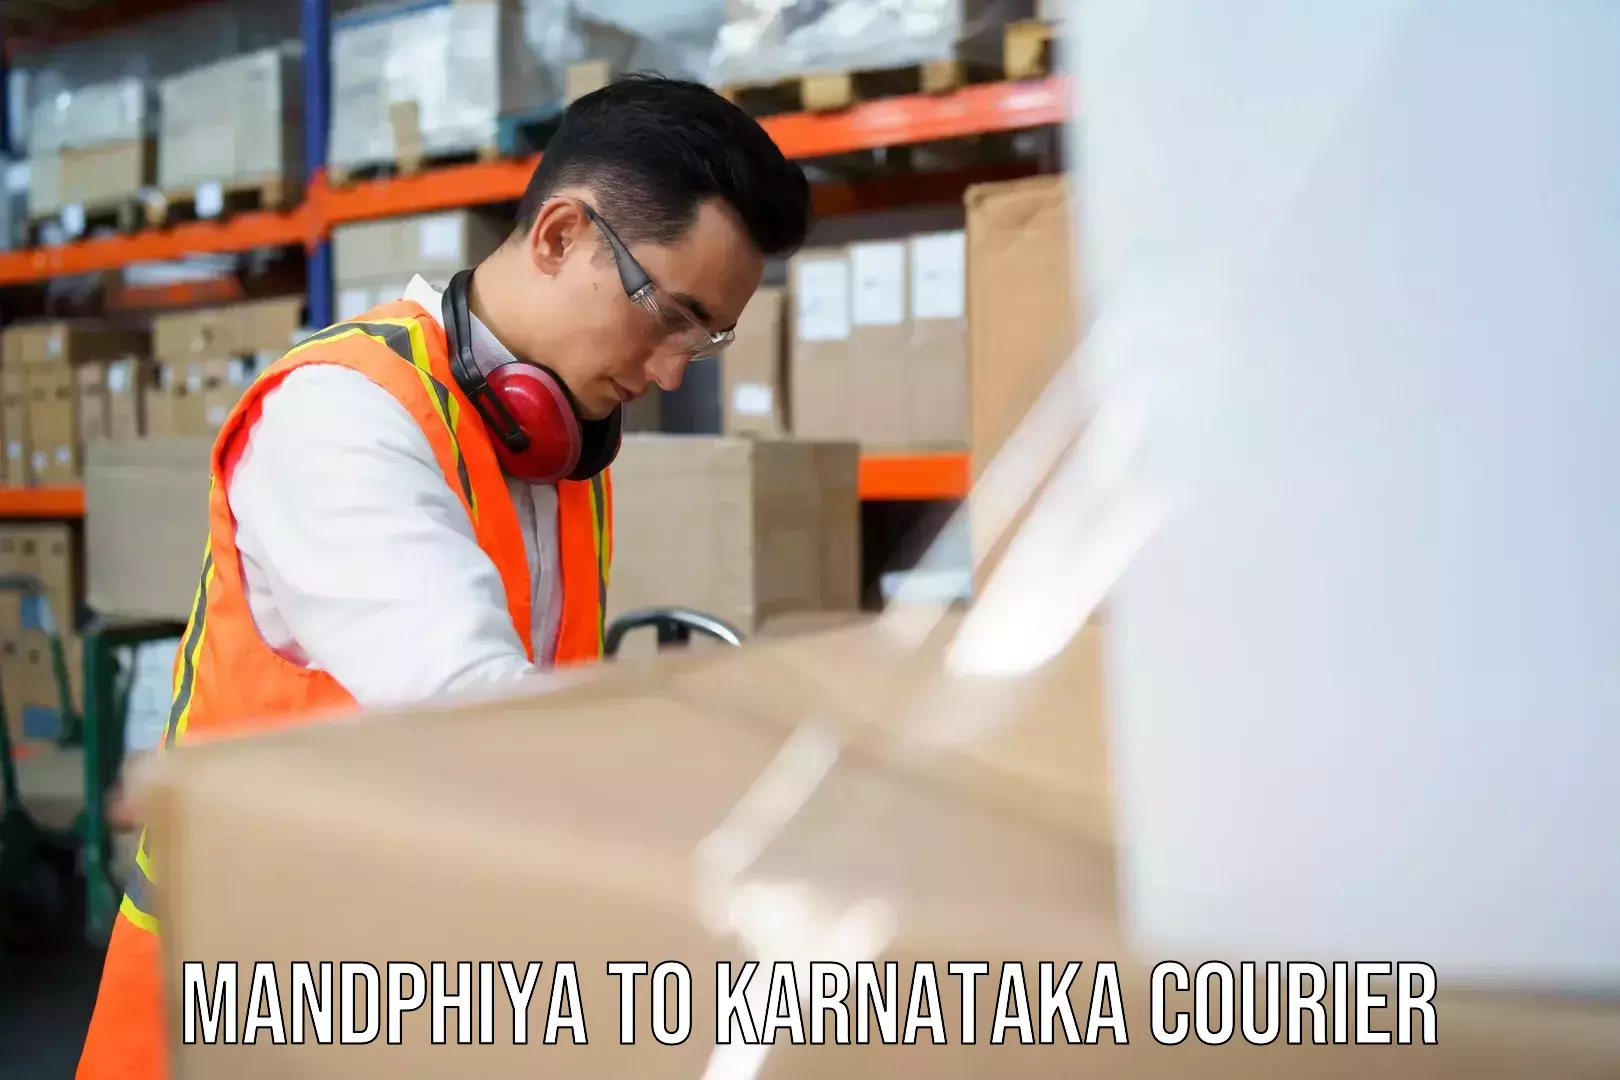 Advanced shipping technology Mandphiya to Chikkamagaluru